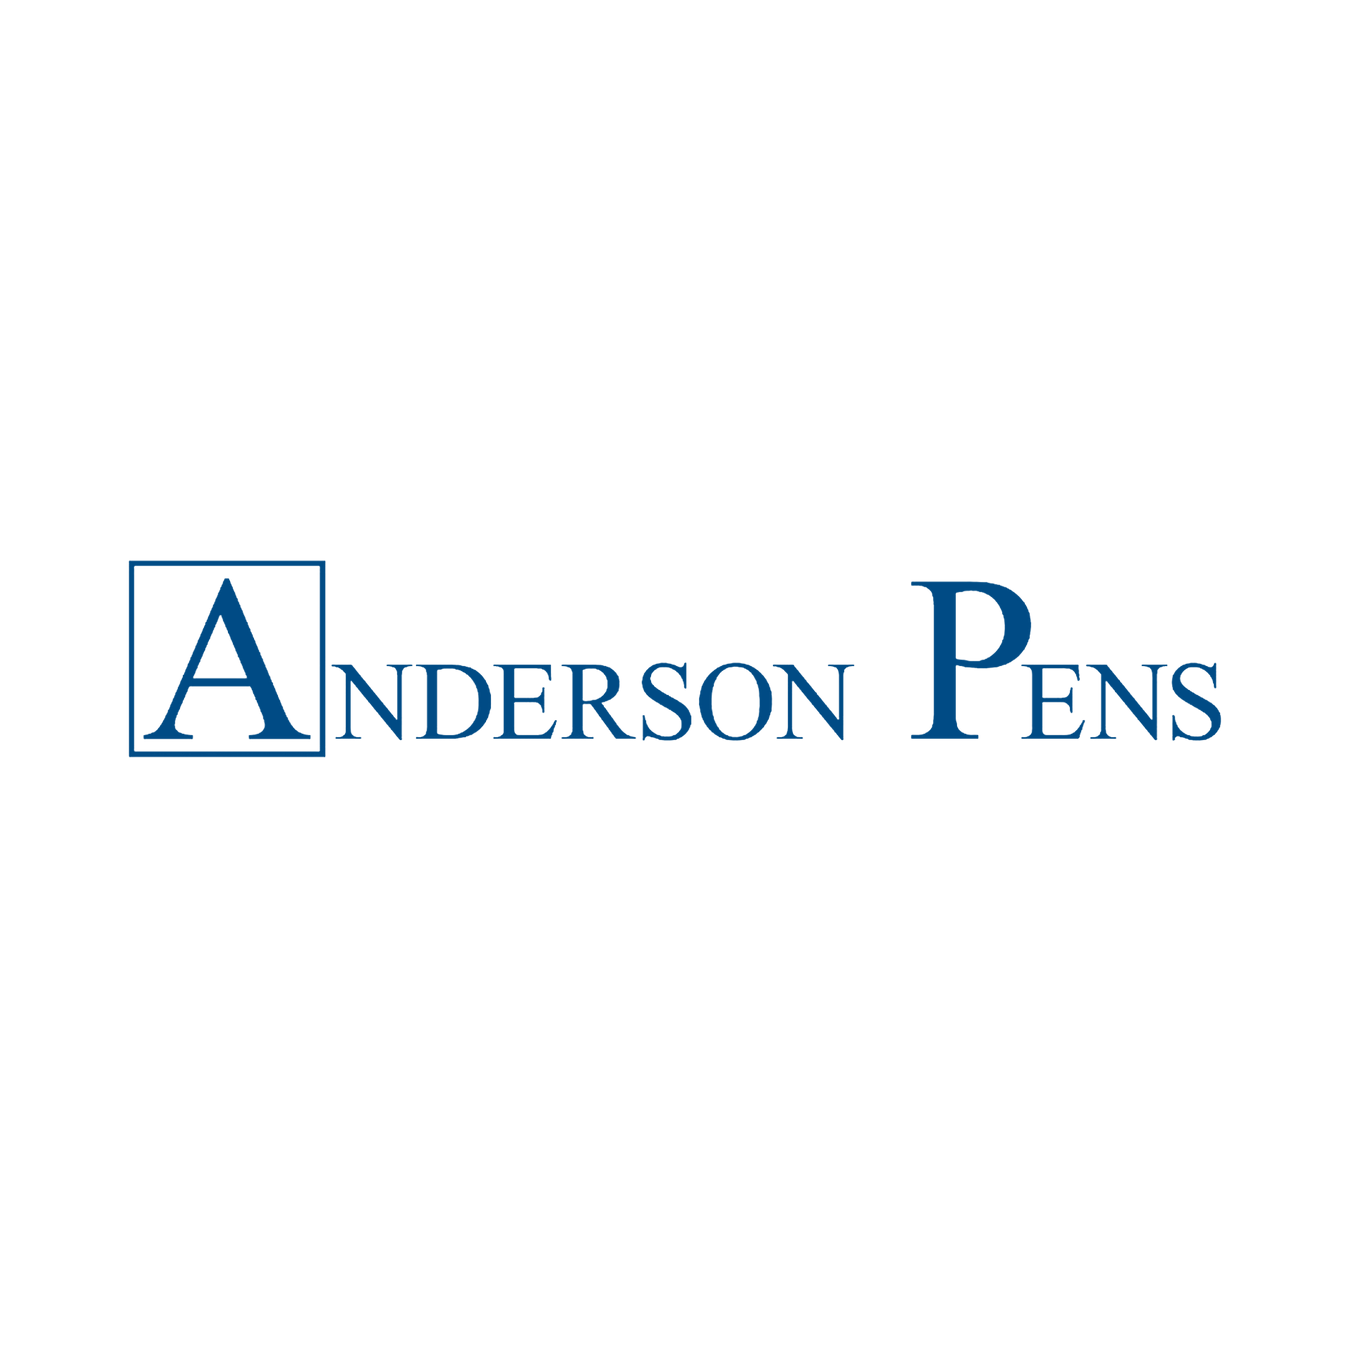 Anderson Pens